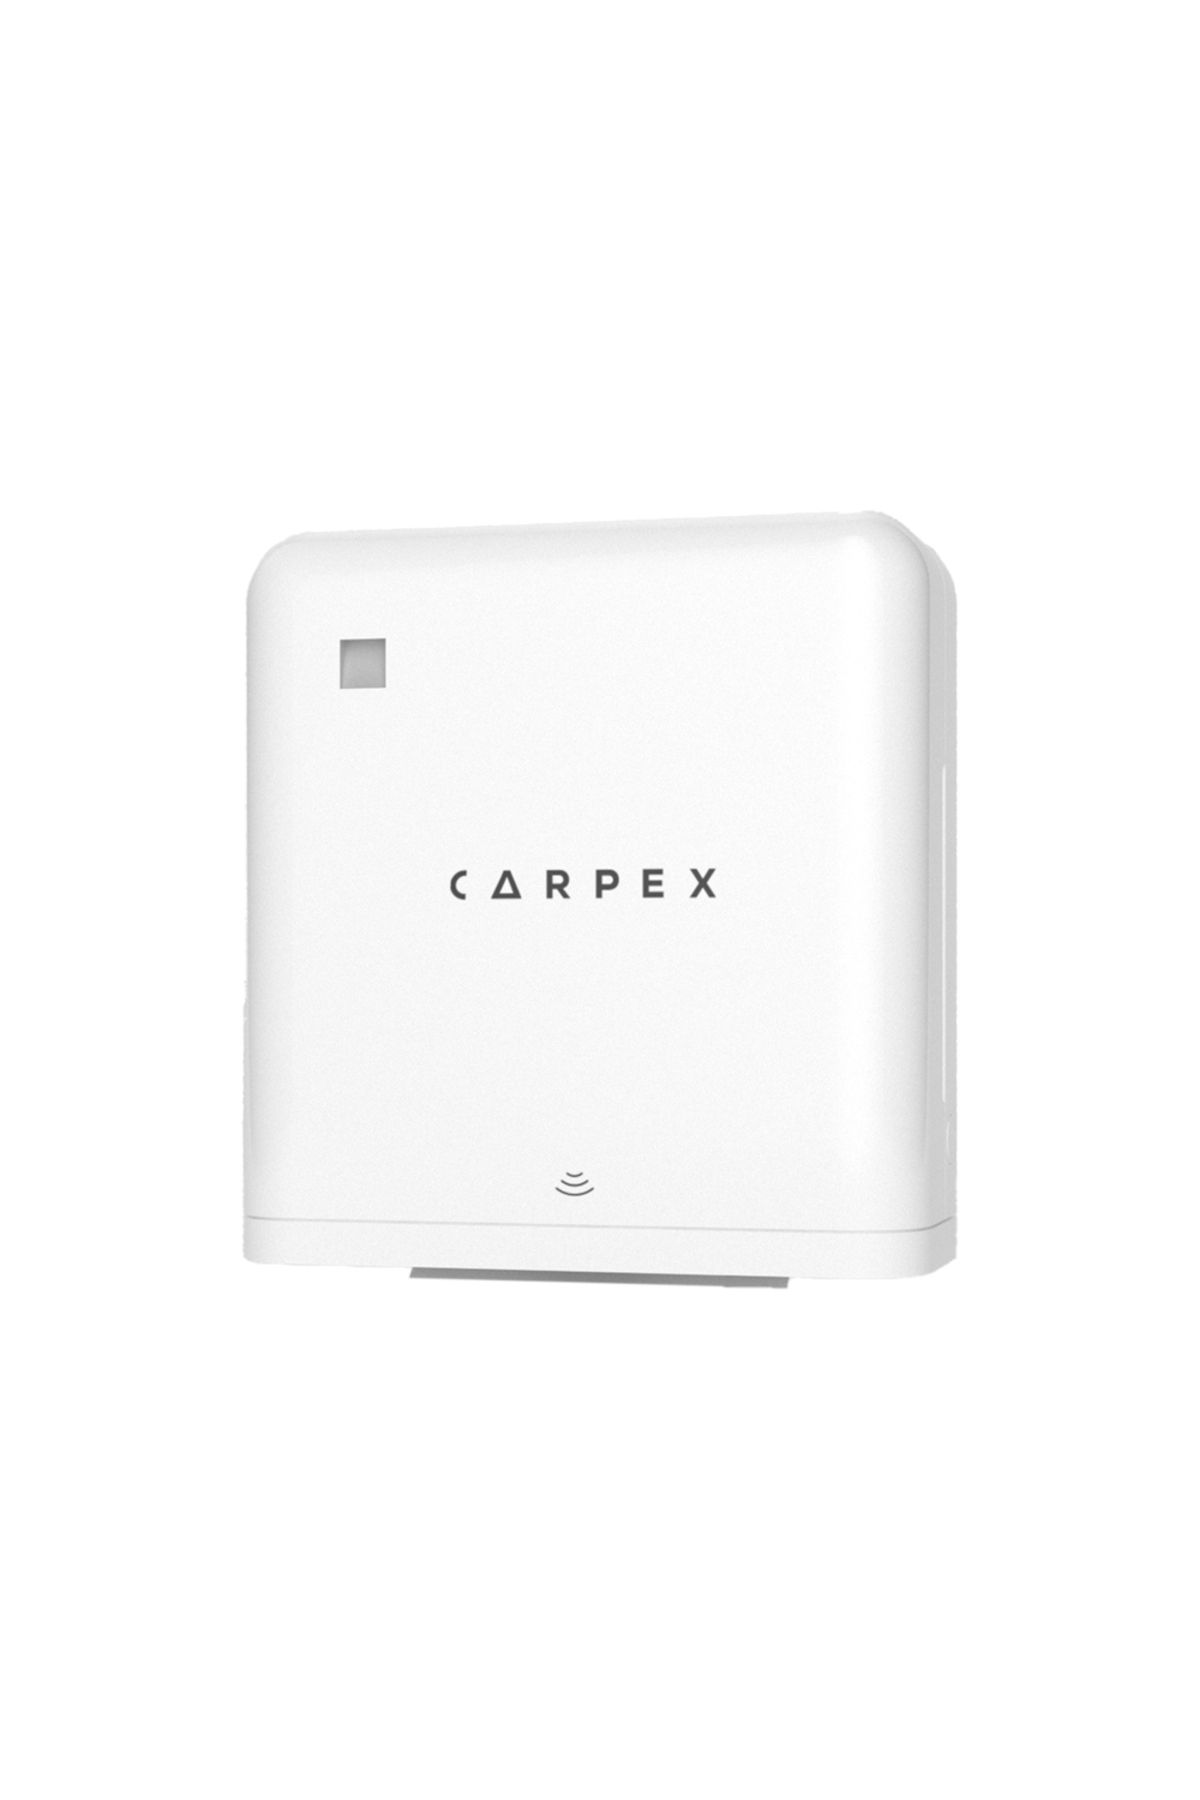 Carpex Prestij Otomatik Kağıt Havlu Dispenseri